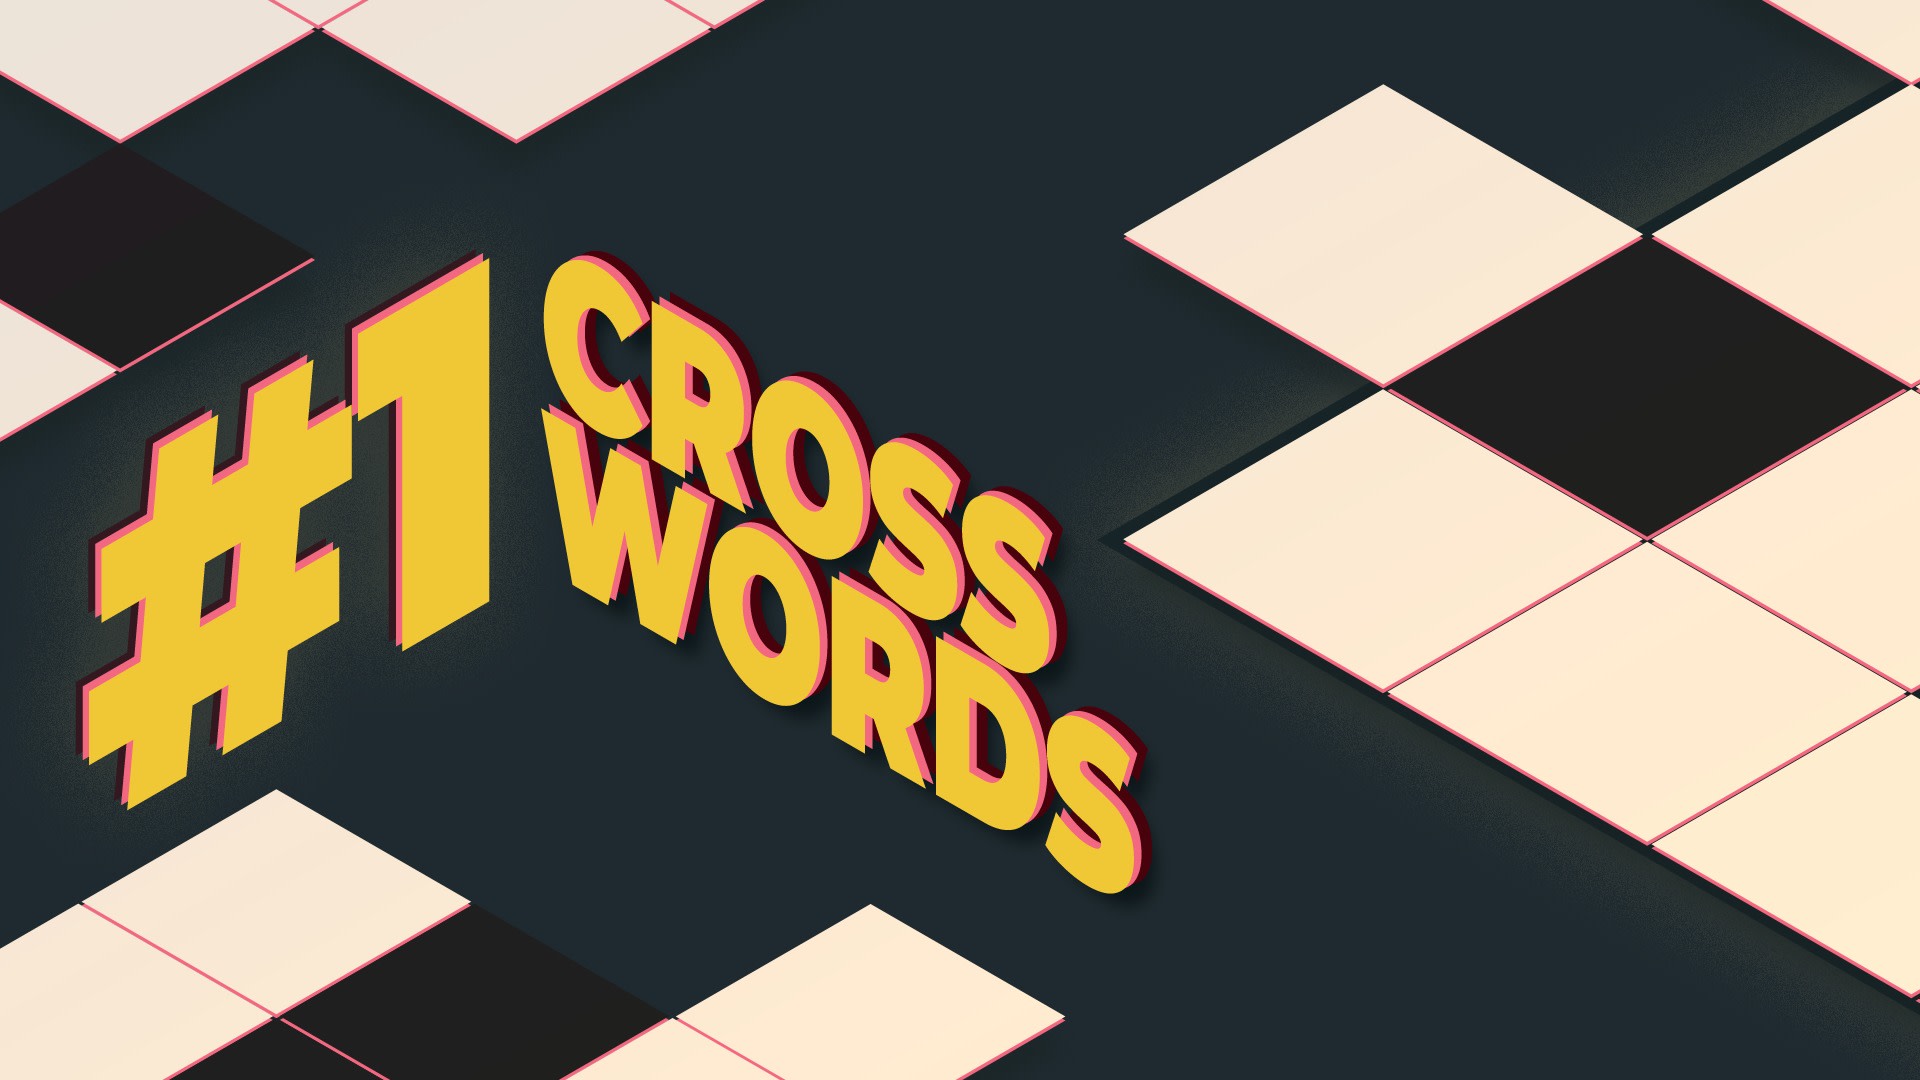 #1 Crosswords